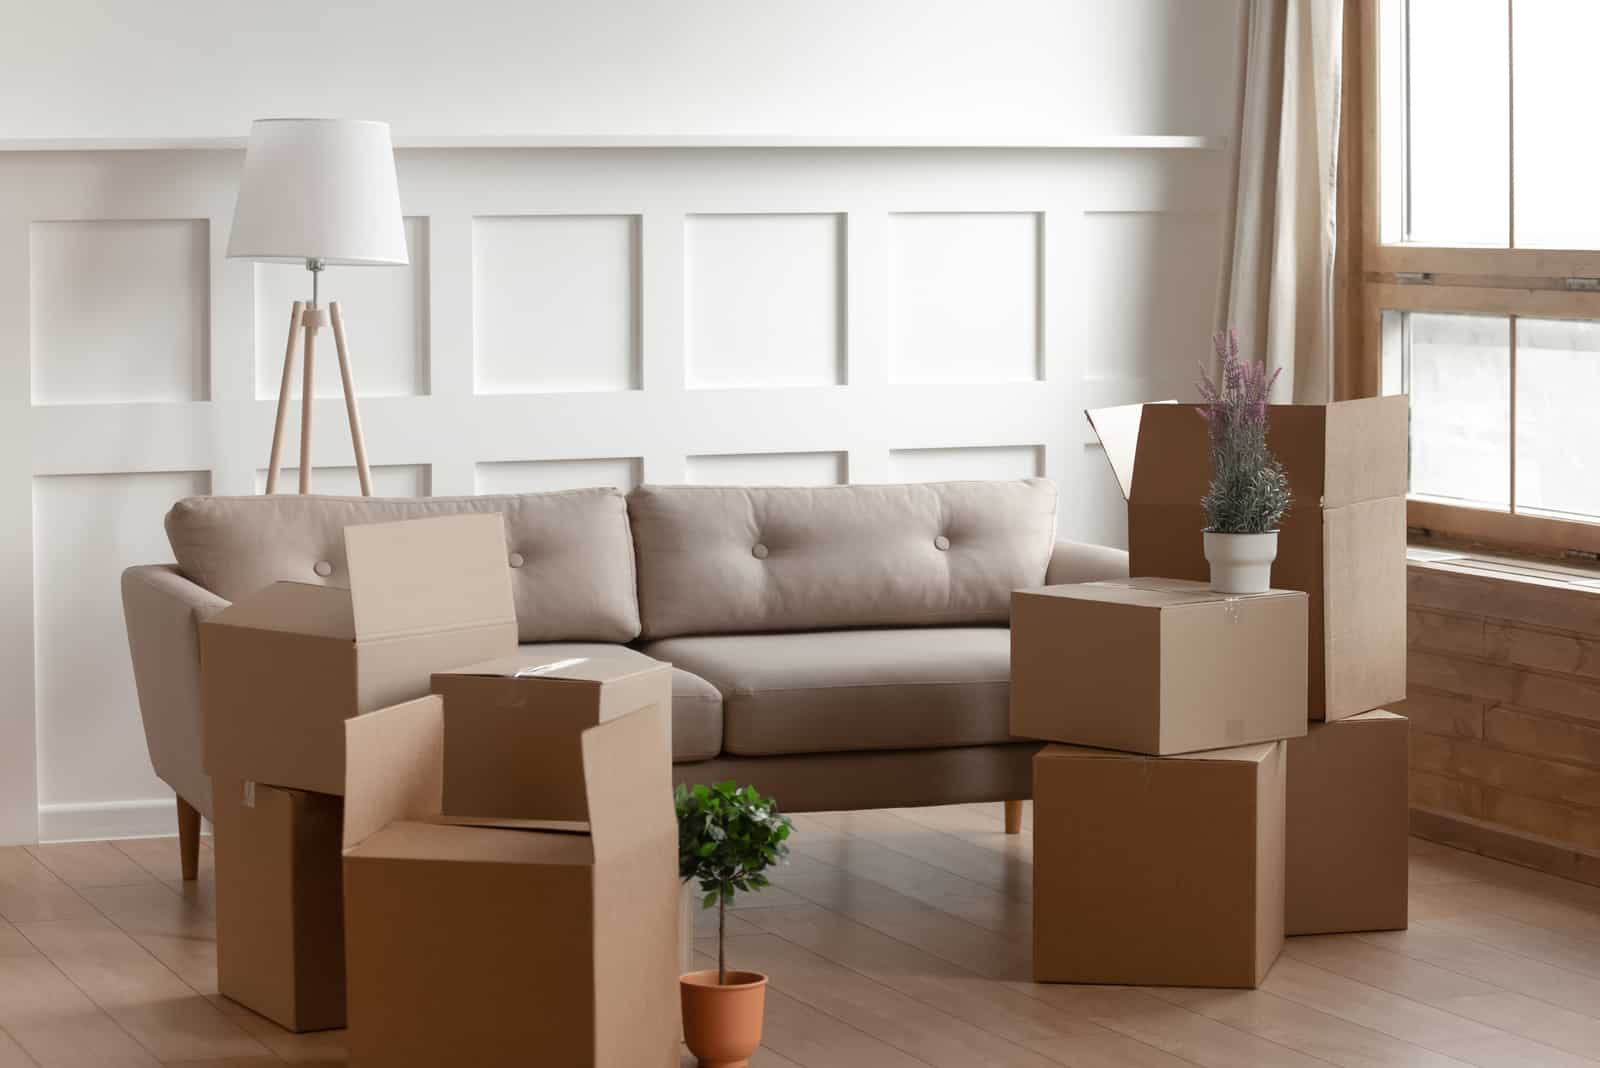 Grandes cajas de cartón, flores domésticas plantas en macetas, lámpara de pie y cómodo sofá en el interior de la sala de estar moderna, sin gente